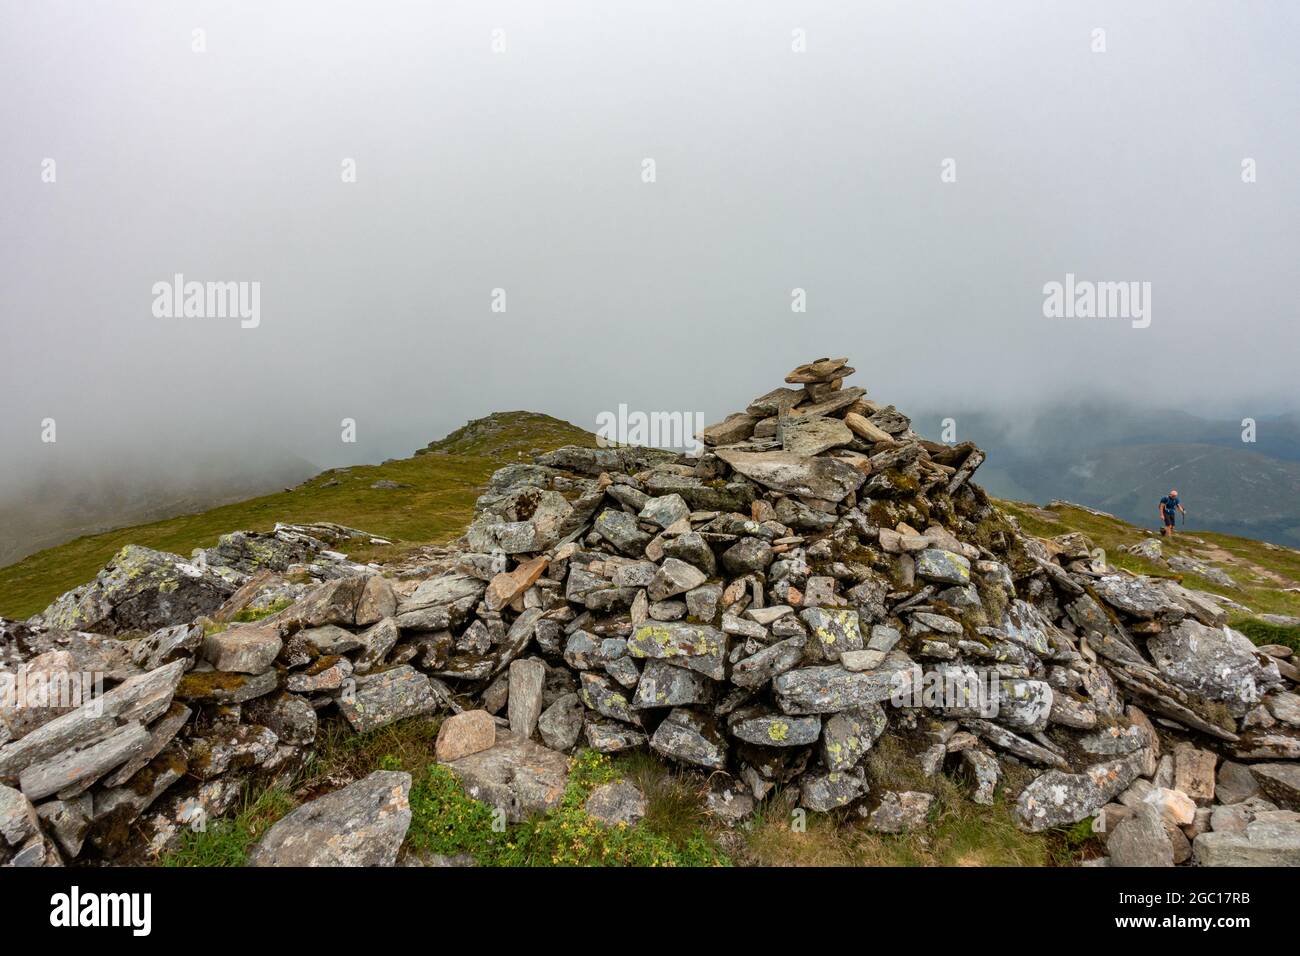 Gipfelsturm des Munro-Bergs Beinn Dubhchraig bei Tyndrum, bei Stirling, Schottland, im Loch Lomond und Trossachs National Park Stockfoto